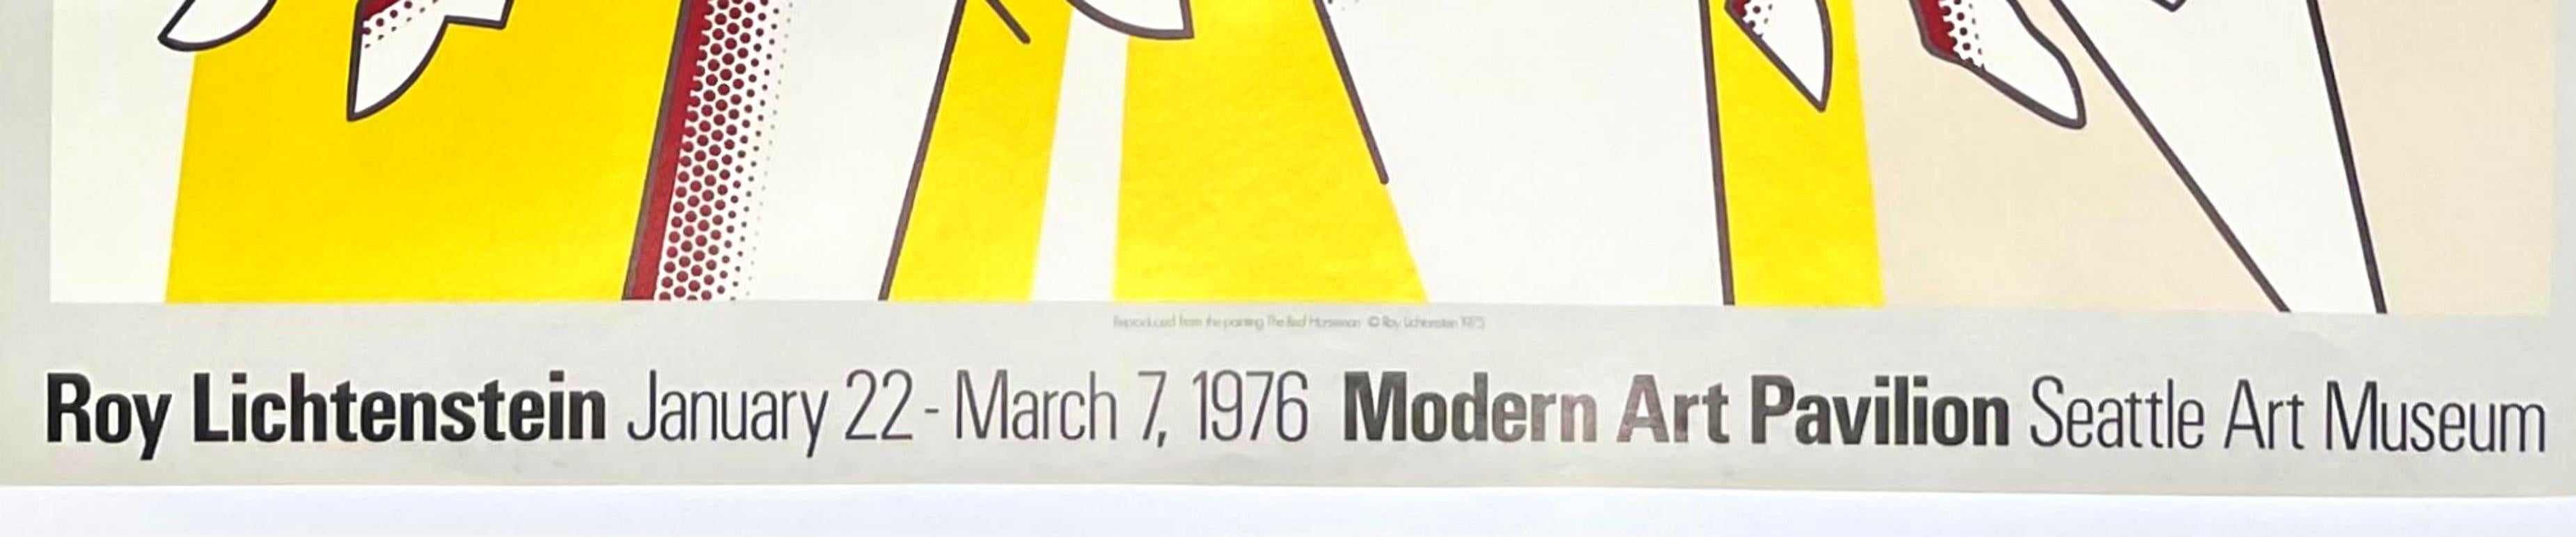 Roy Lichtenstein au Modern Art Pavilion, Seattle Art Museum Affiche à tirage limité, 1976
Lithographie offset
Édition limitée à 1500 exemplaires 
22 1/2 × 28 pouces
Non encadré
Cette affiche lithographique offset en édition limitée a été publiée à